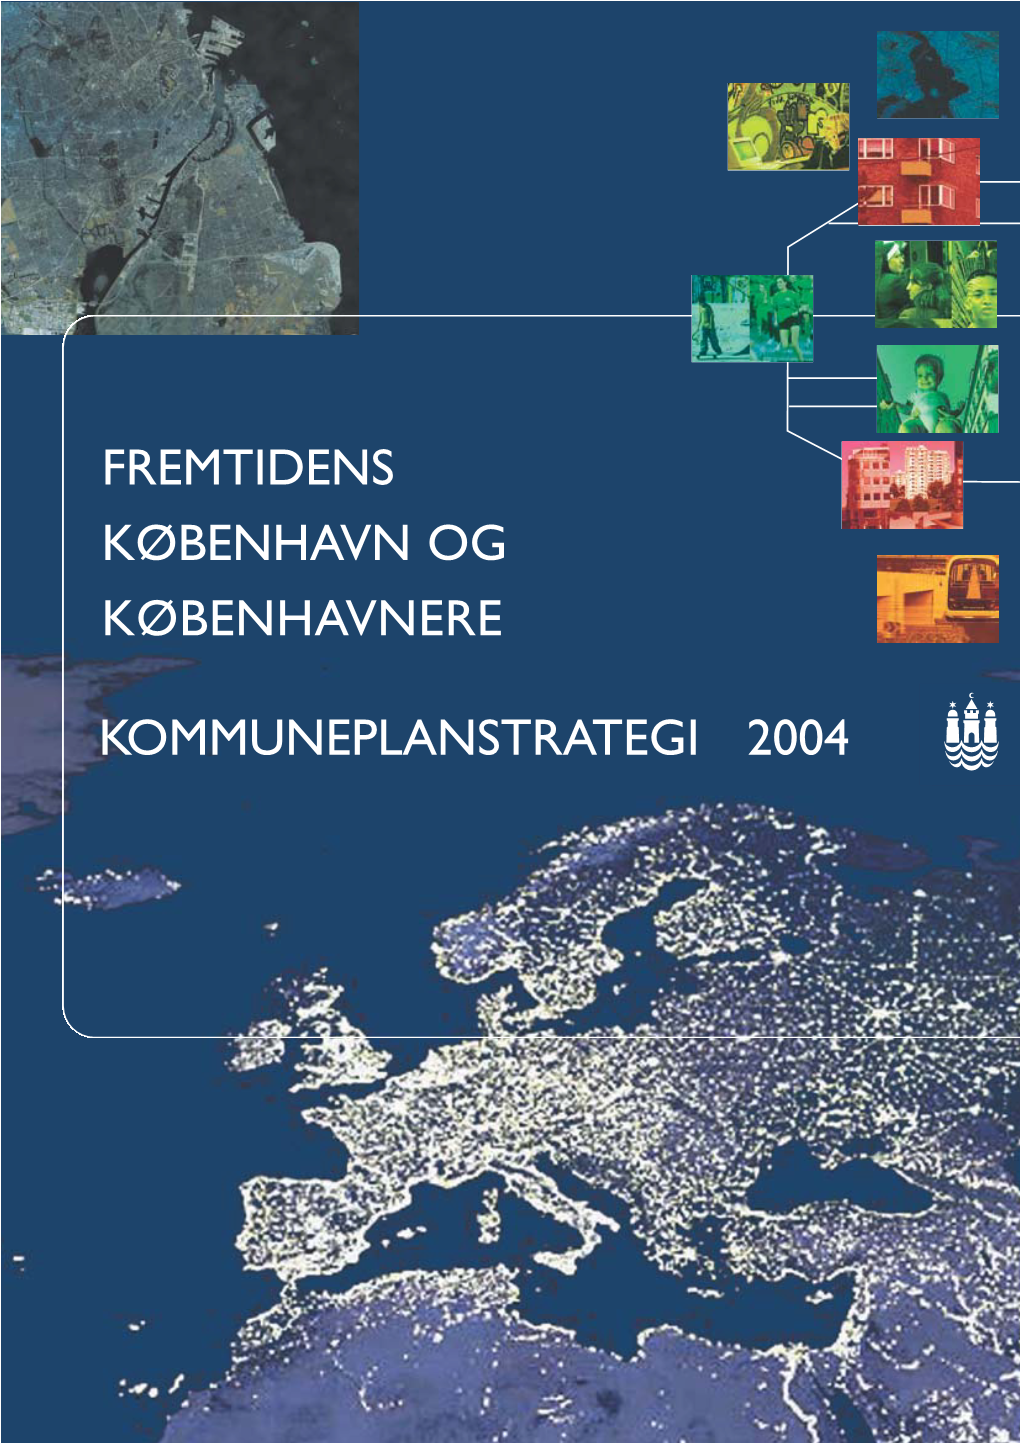 Kommuneplanstrategi 2004 Fremtidens København Og Københavnere